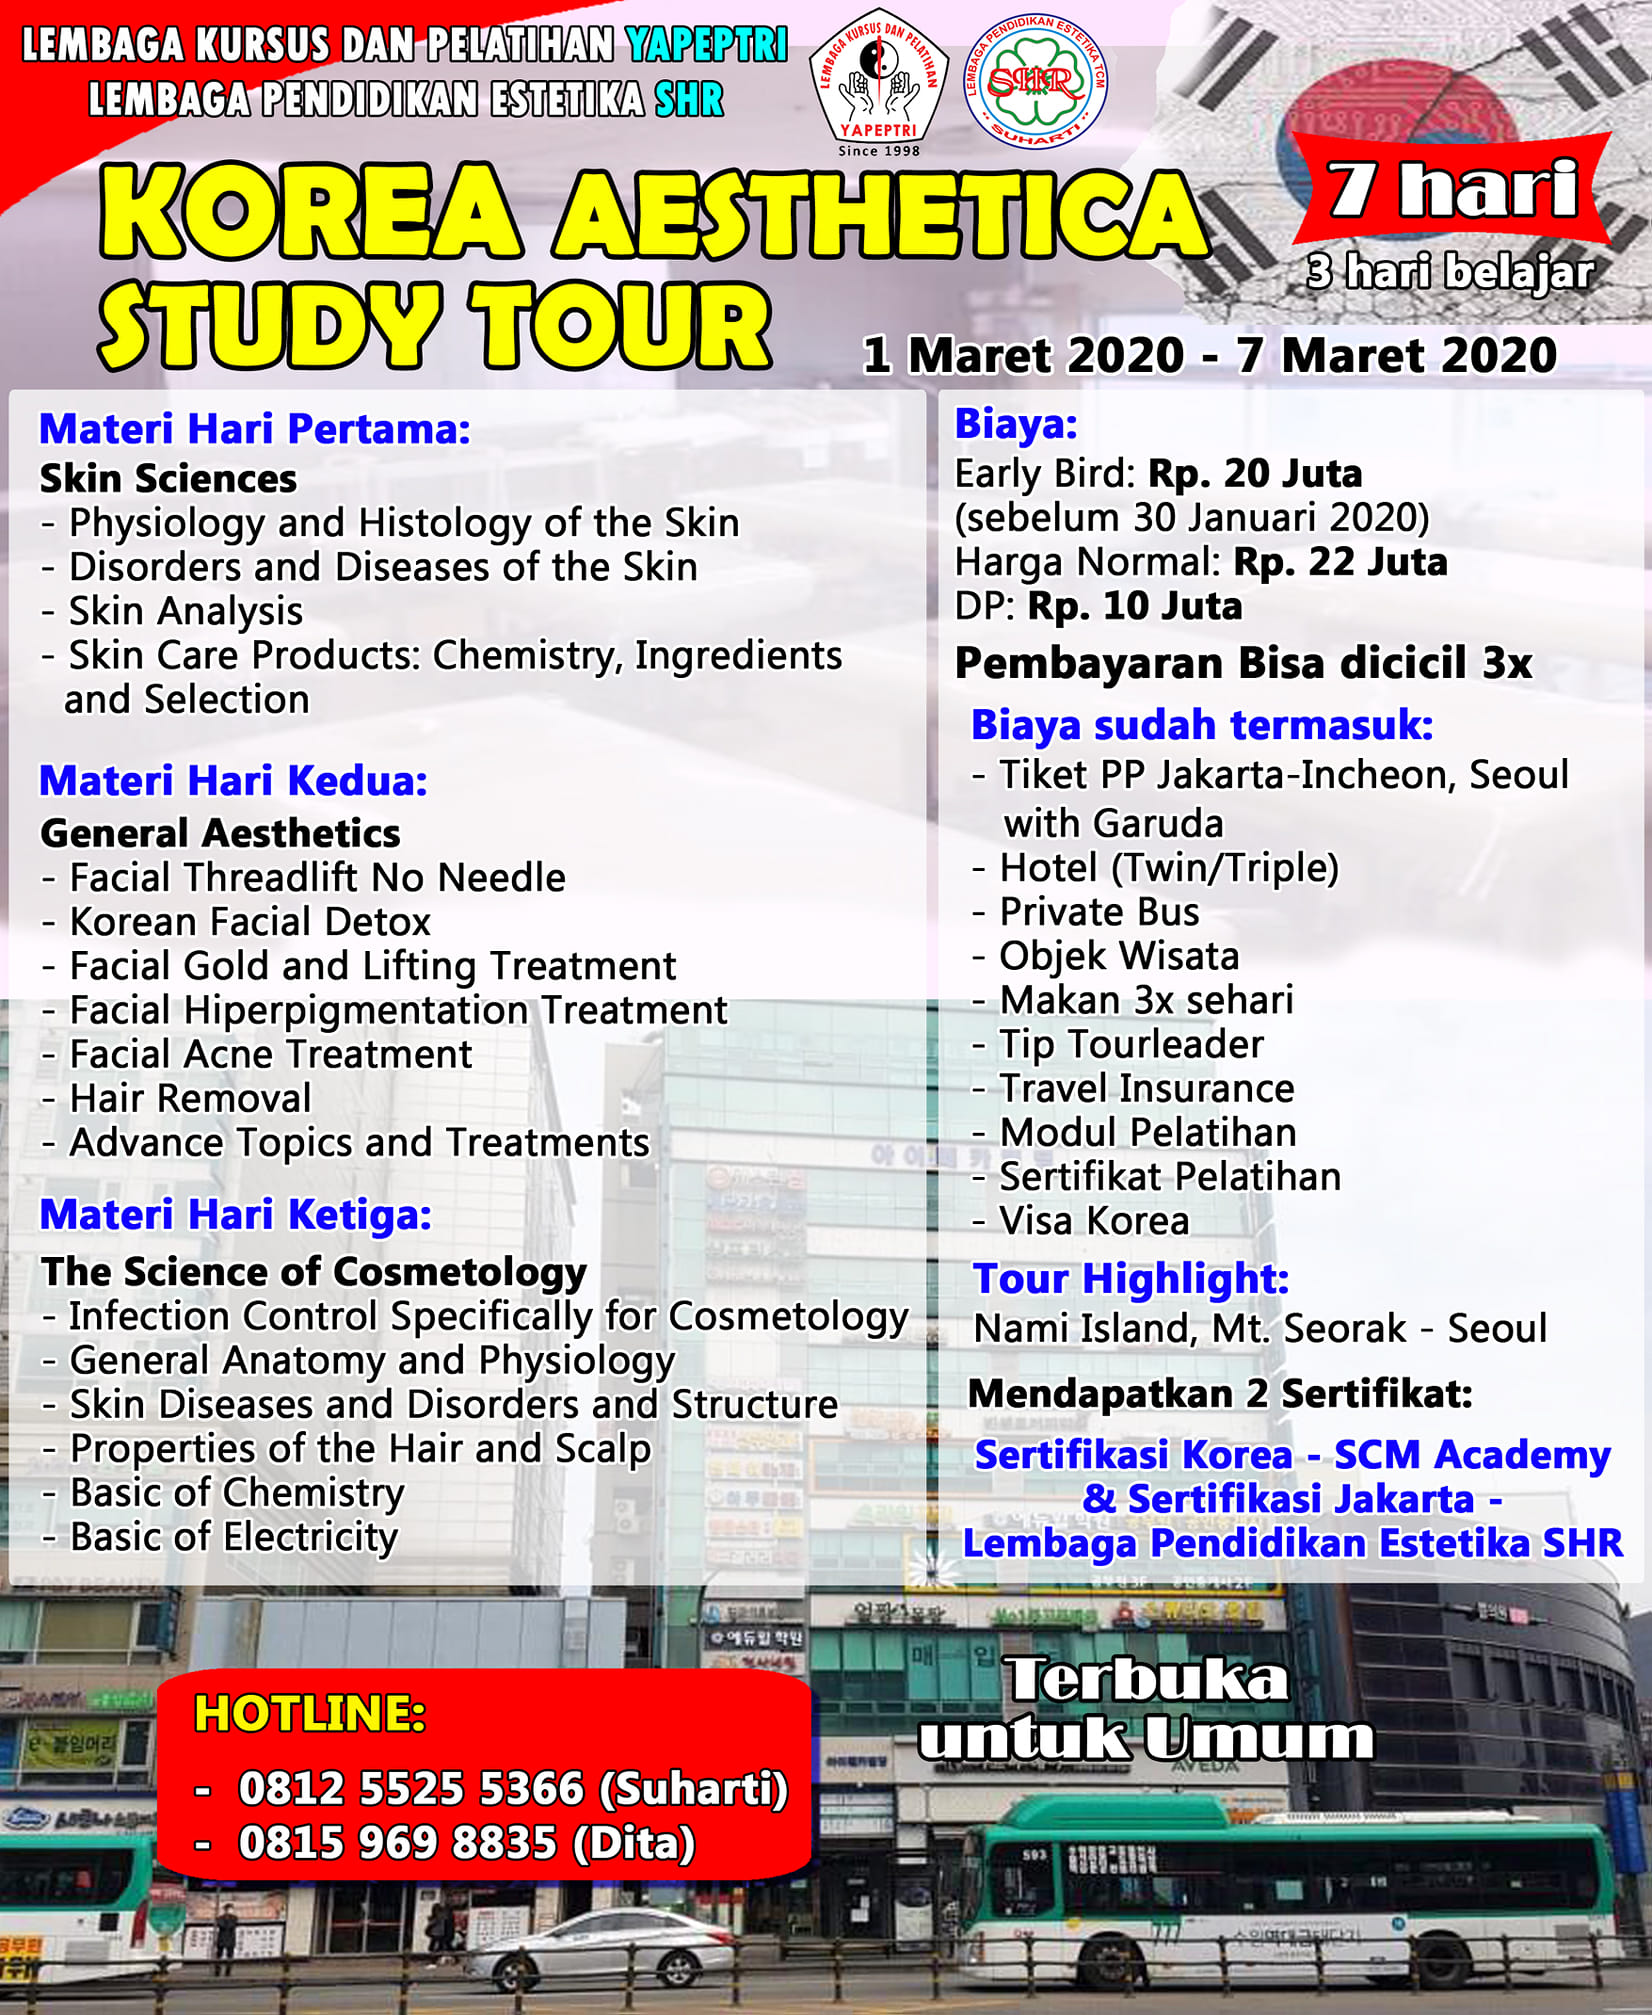 KOREA AESTHETIC STUDY TOUR 7